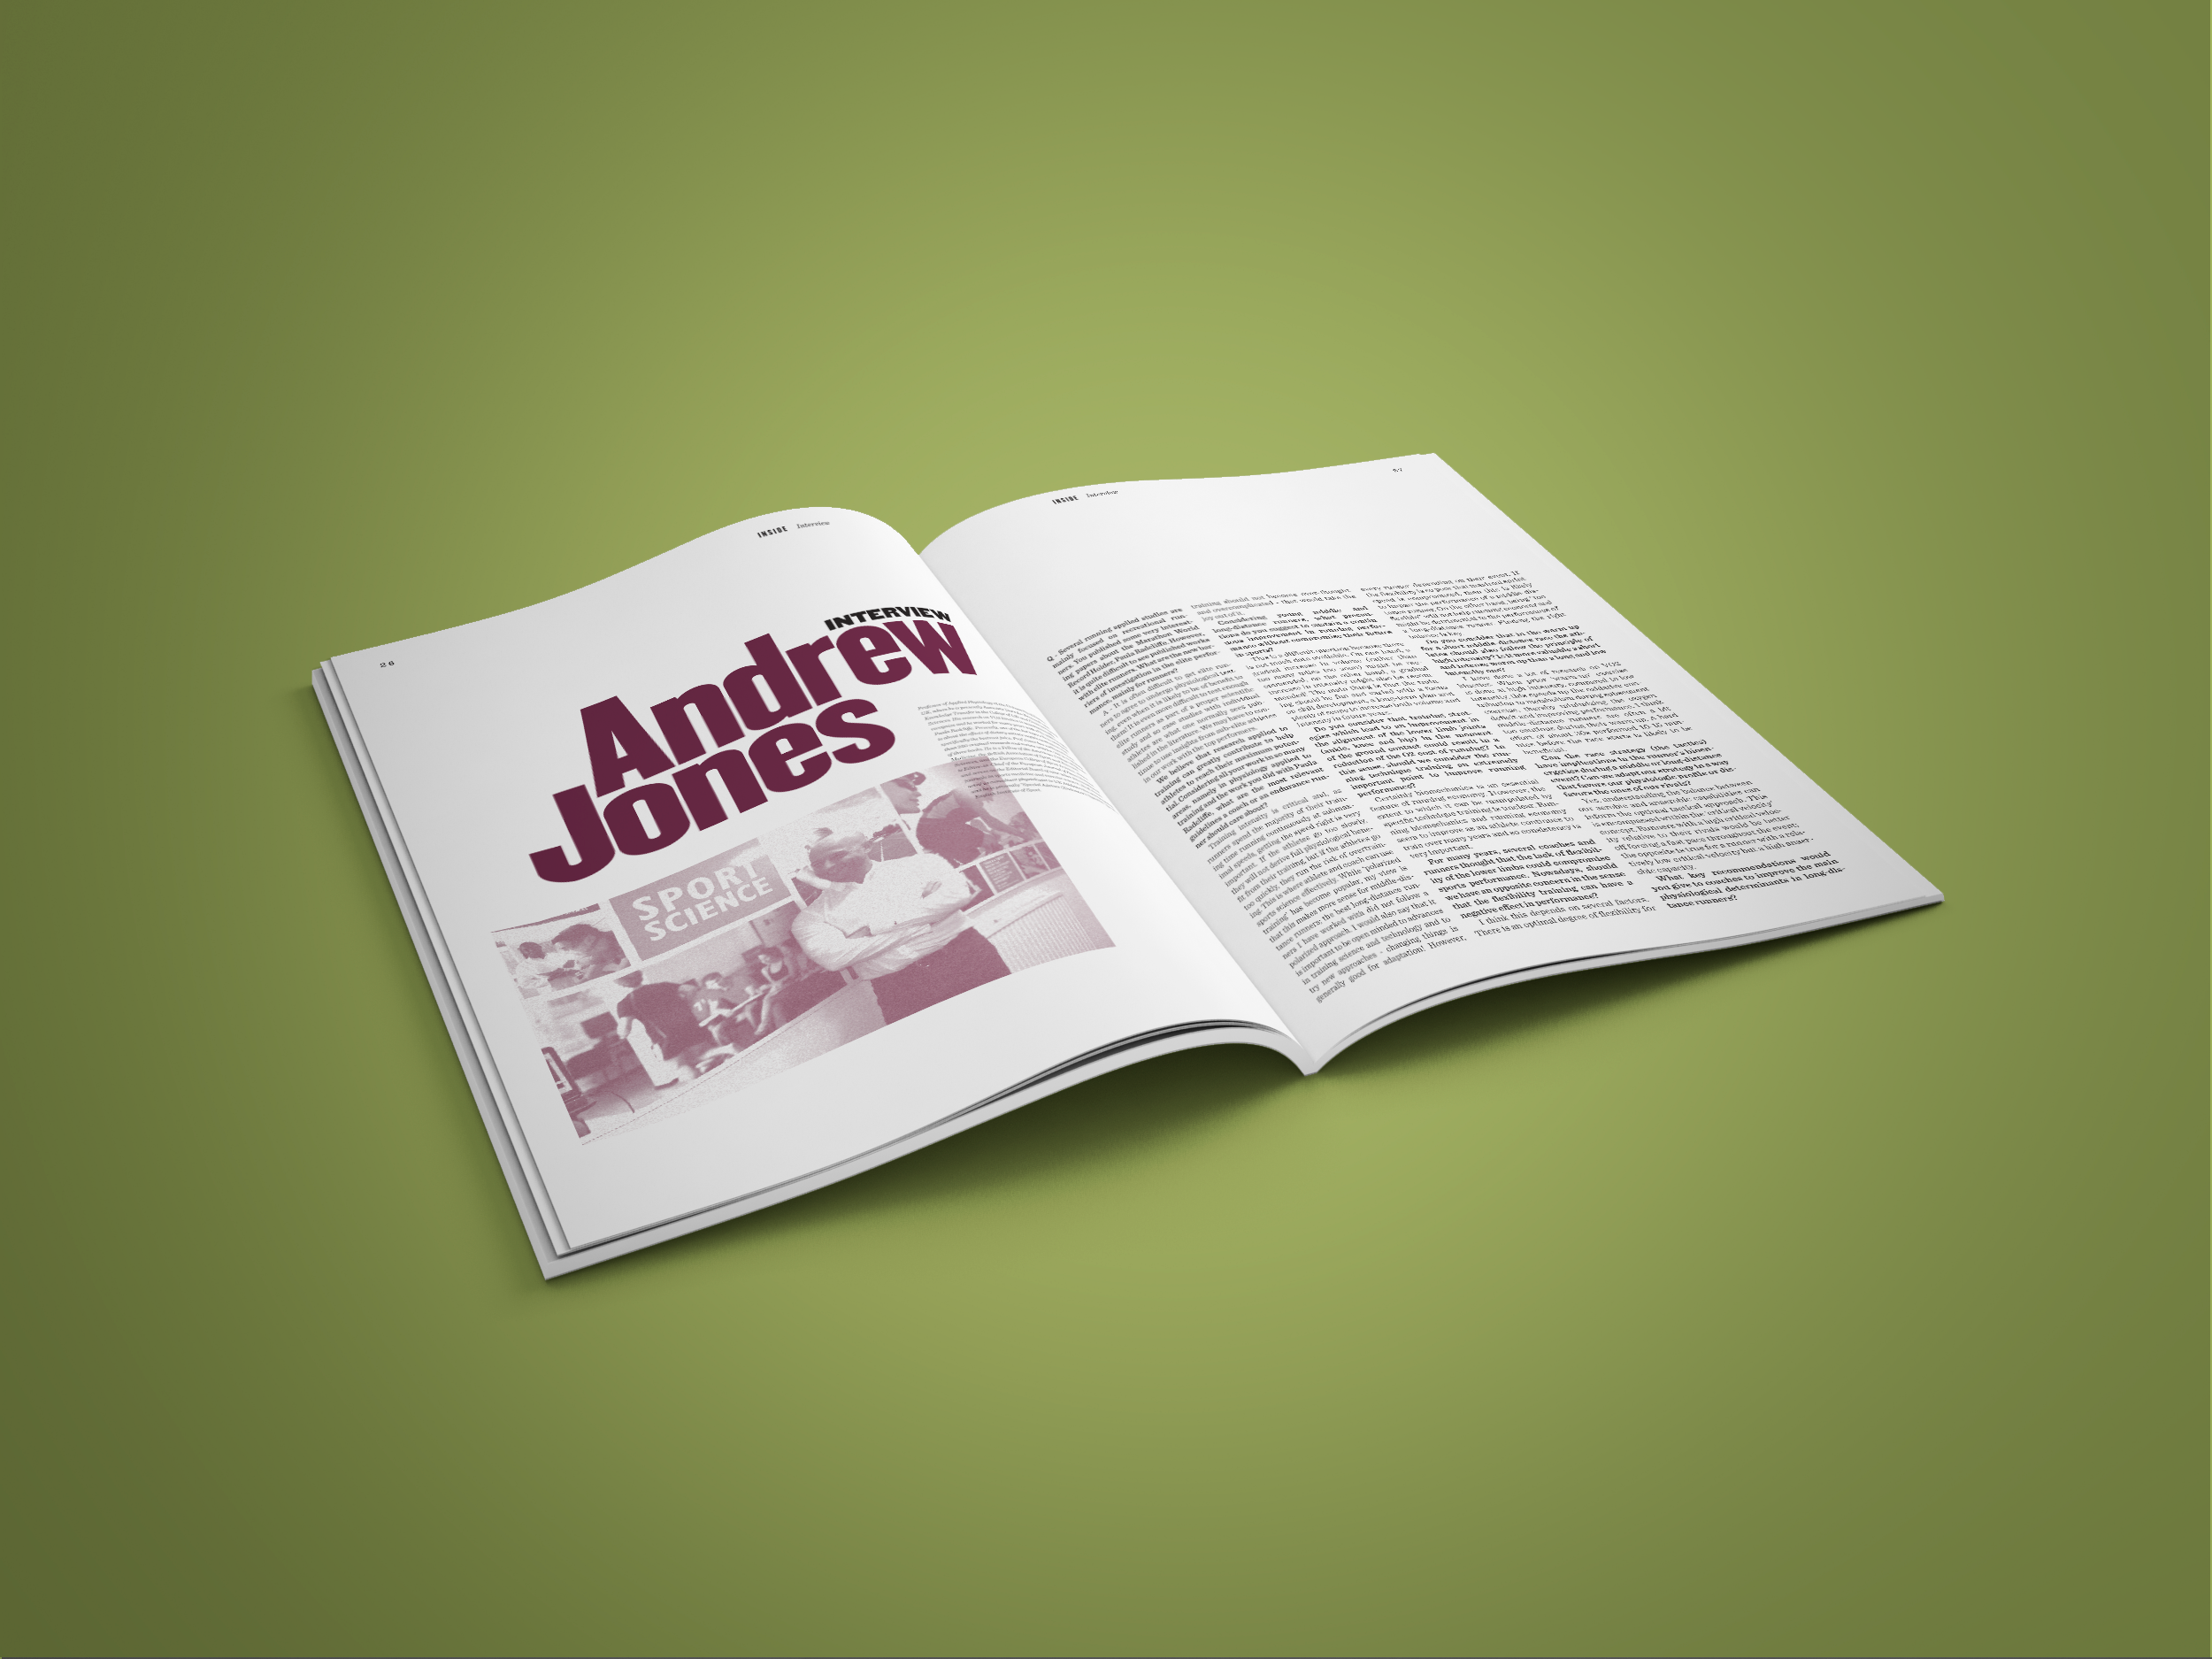  Andrew Jones é um investigador reputado no desporto e que foi durante vários anos responsável pela avaliação da recordista do mundo da Maratona, Paula Radcliffe. Tem na edição nº 2 uma entrevista com conteúdos muito relevantes. 